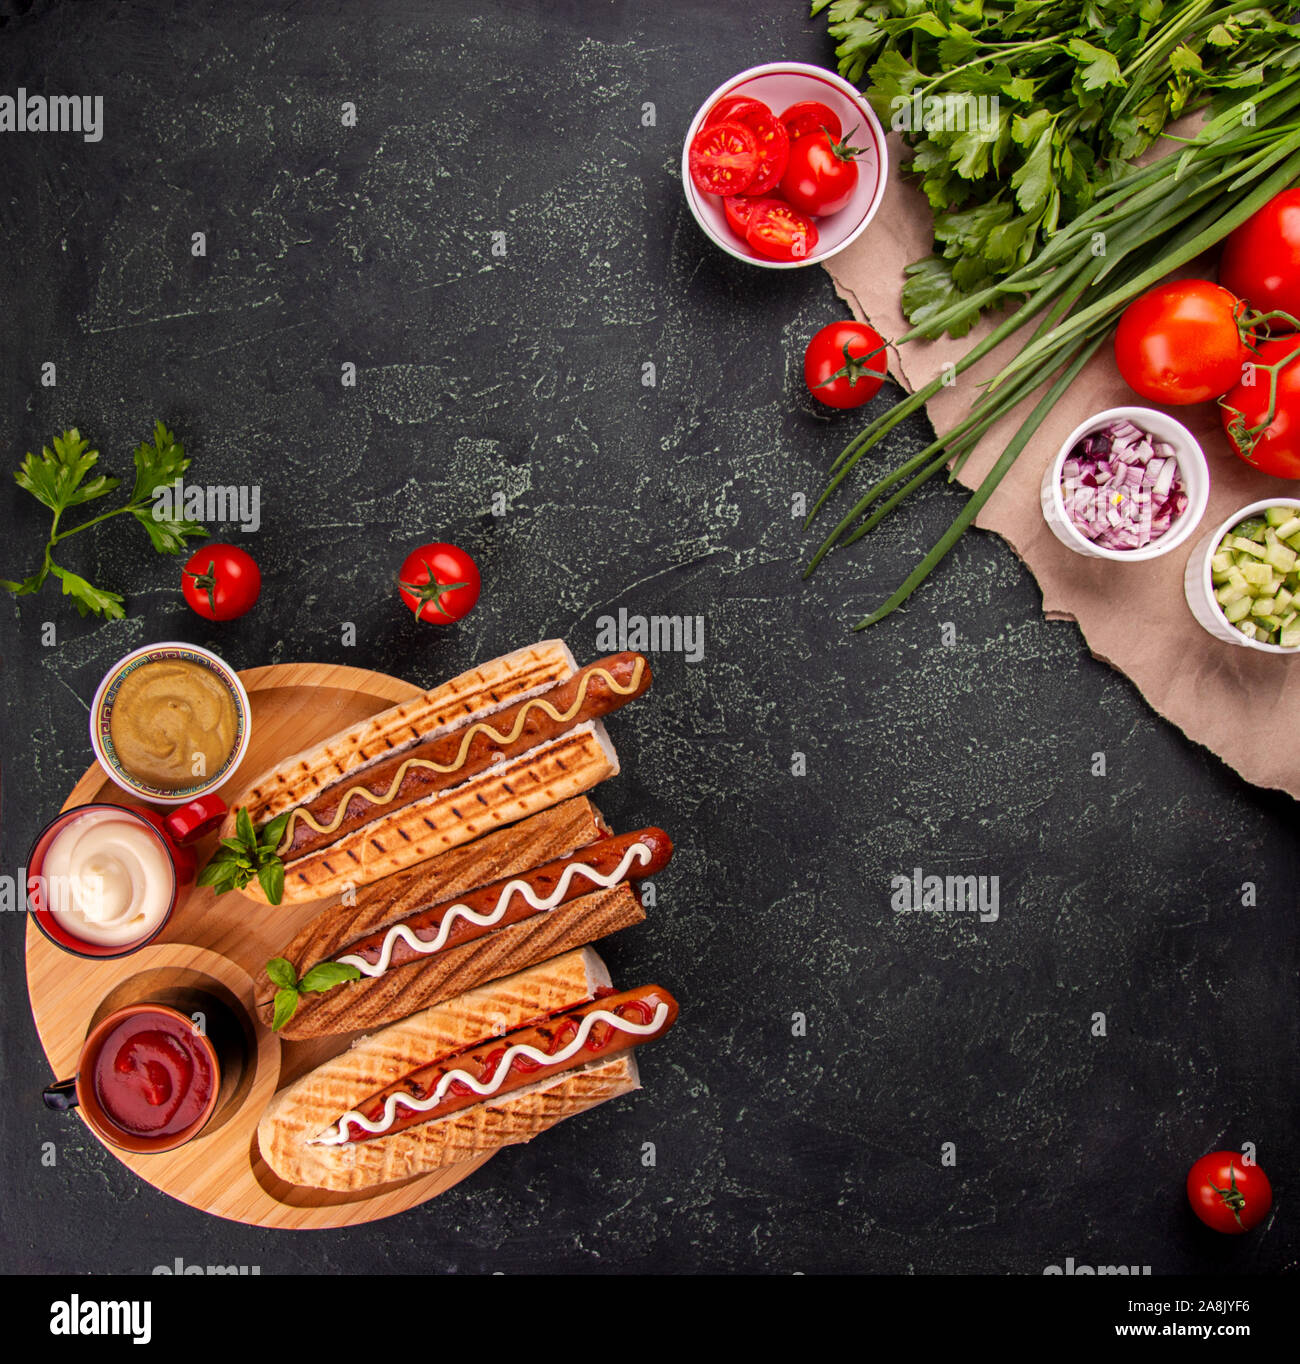 Hot Dogs, Gemüse und sauses auf schwarzem Hintergrund. Fast food, amerikanische tradditional Essen. top View. Kopieren Sie Platz Stockfoto